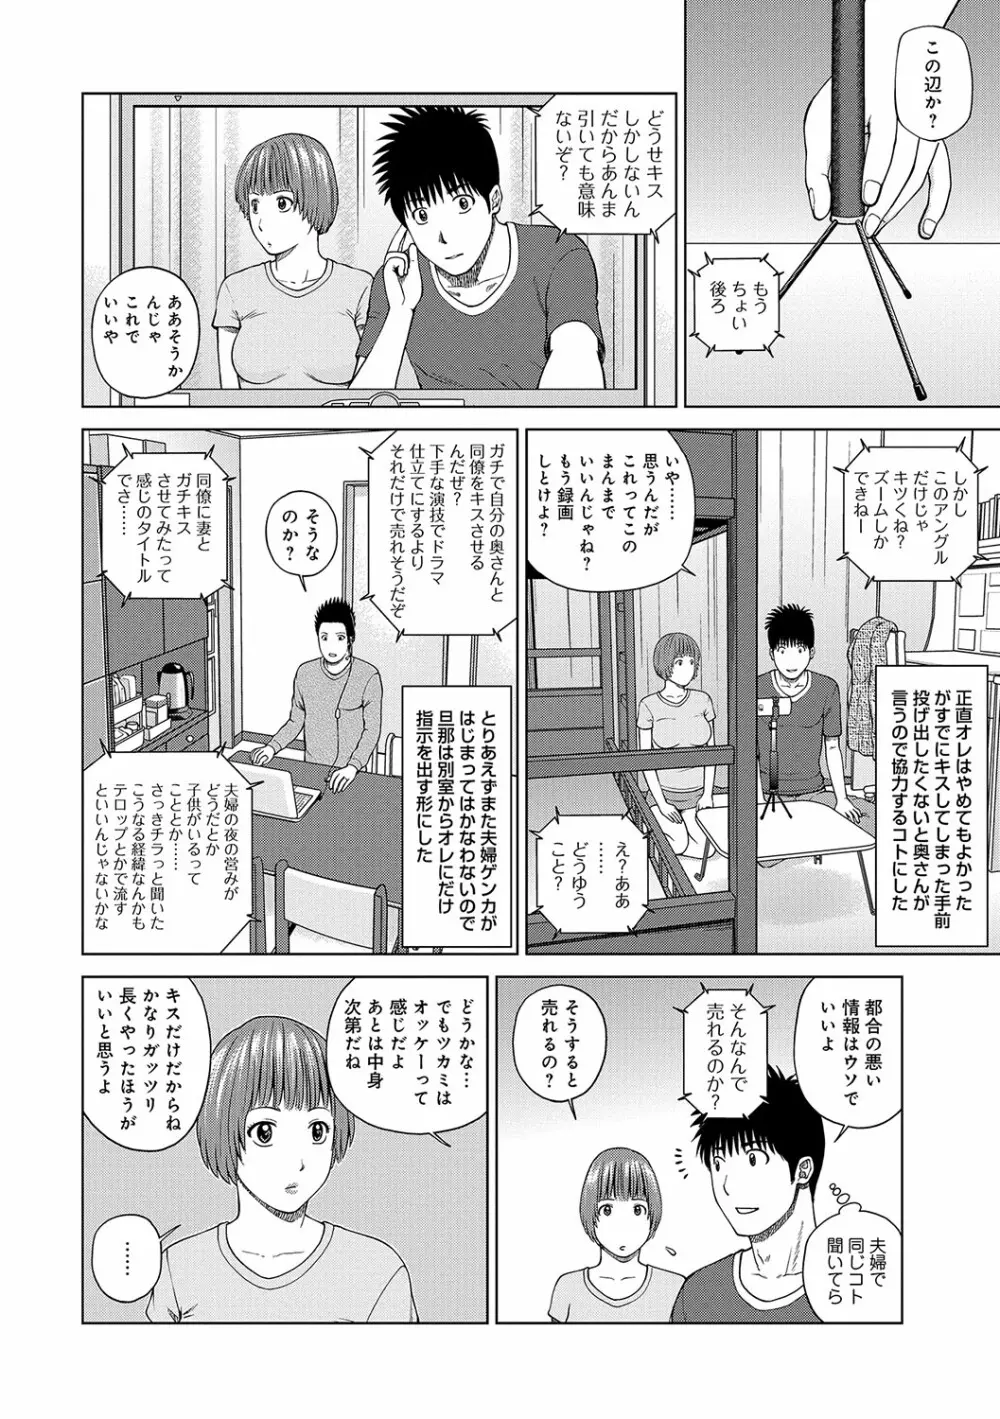 WEB版コミック激ヤバ! vol.96 5ページ